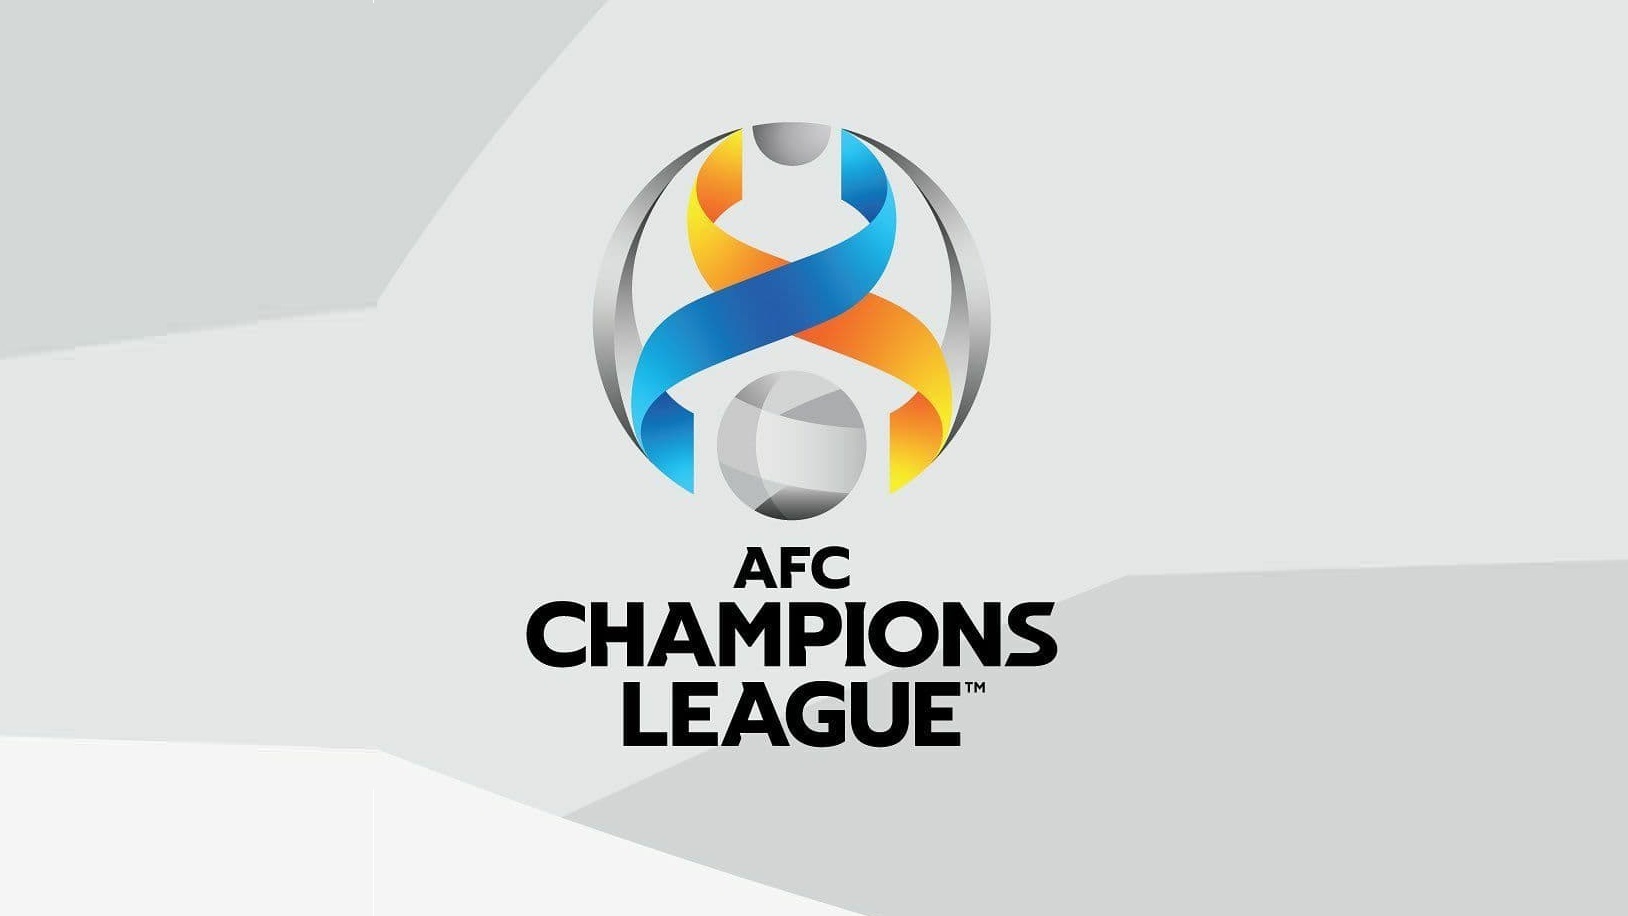 لیگ قهرمانان آسیا 2021